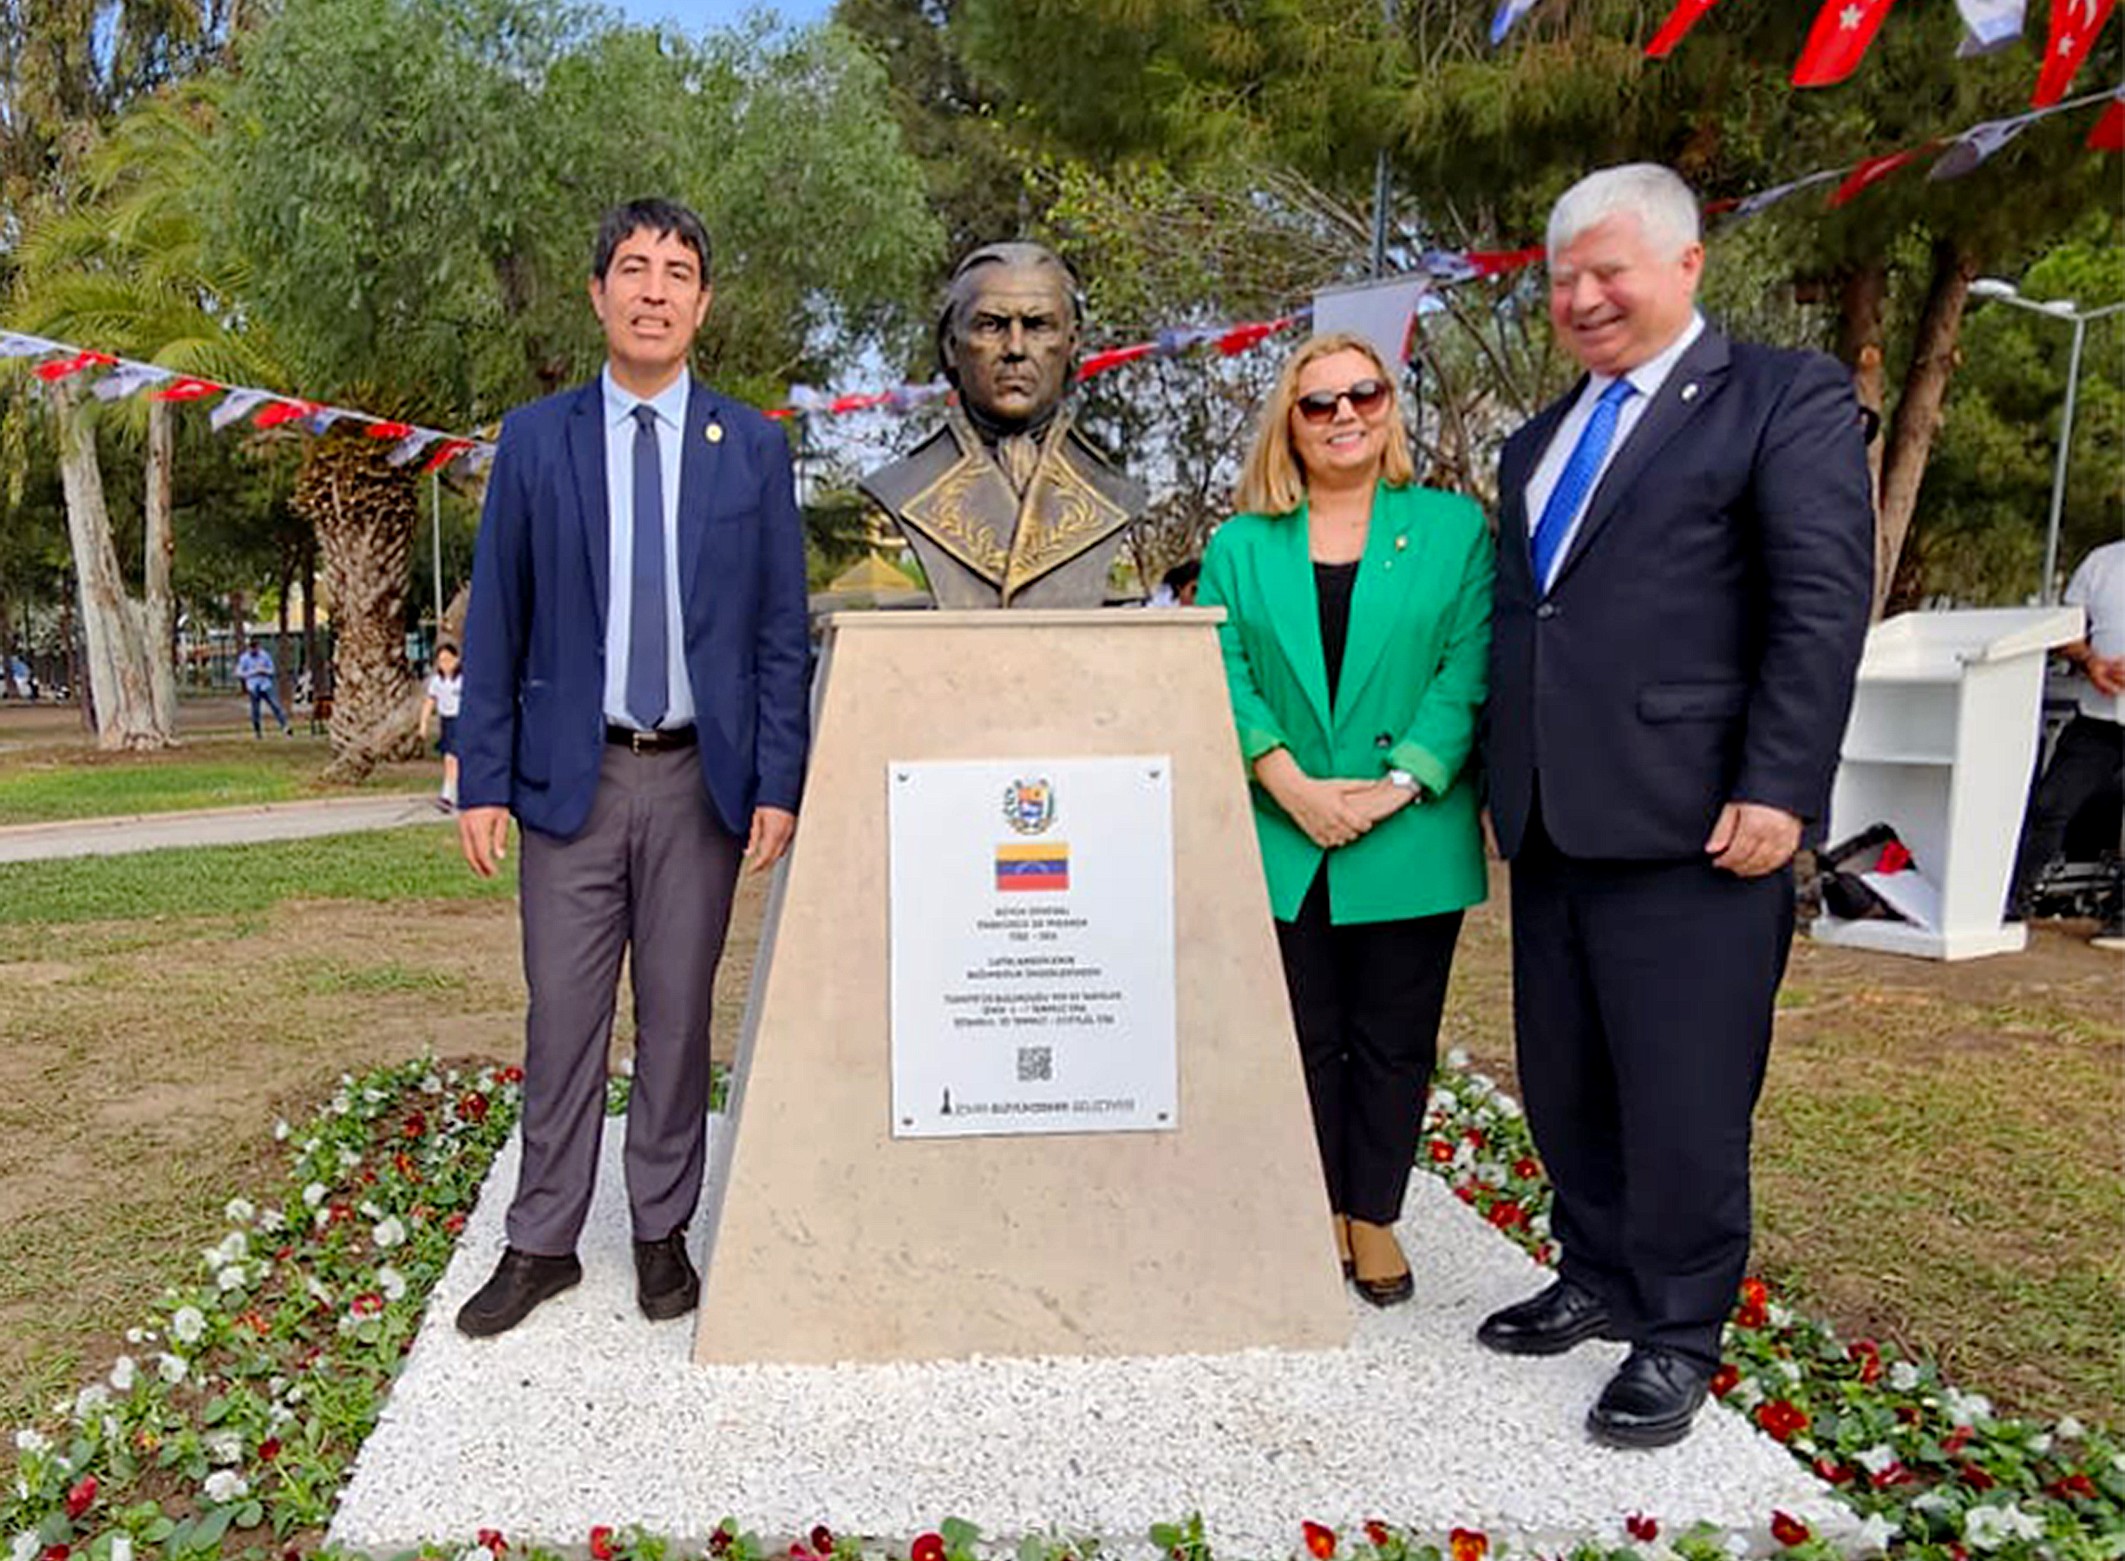 Izmir acoge al precursor de la libertad suramericana: Inauguración del busto de Francisco de Miranda